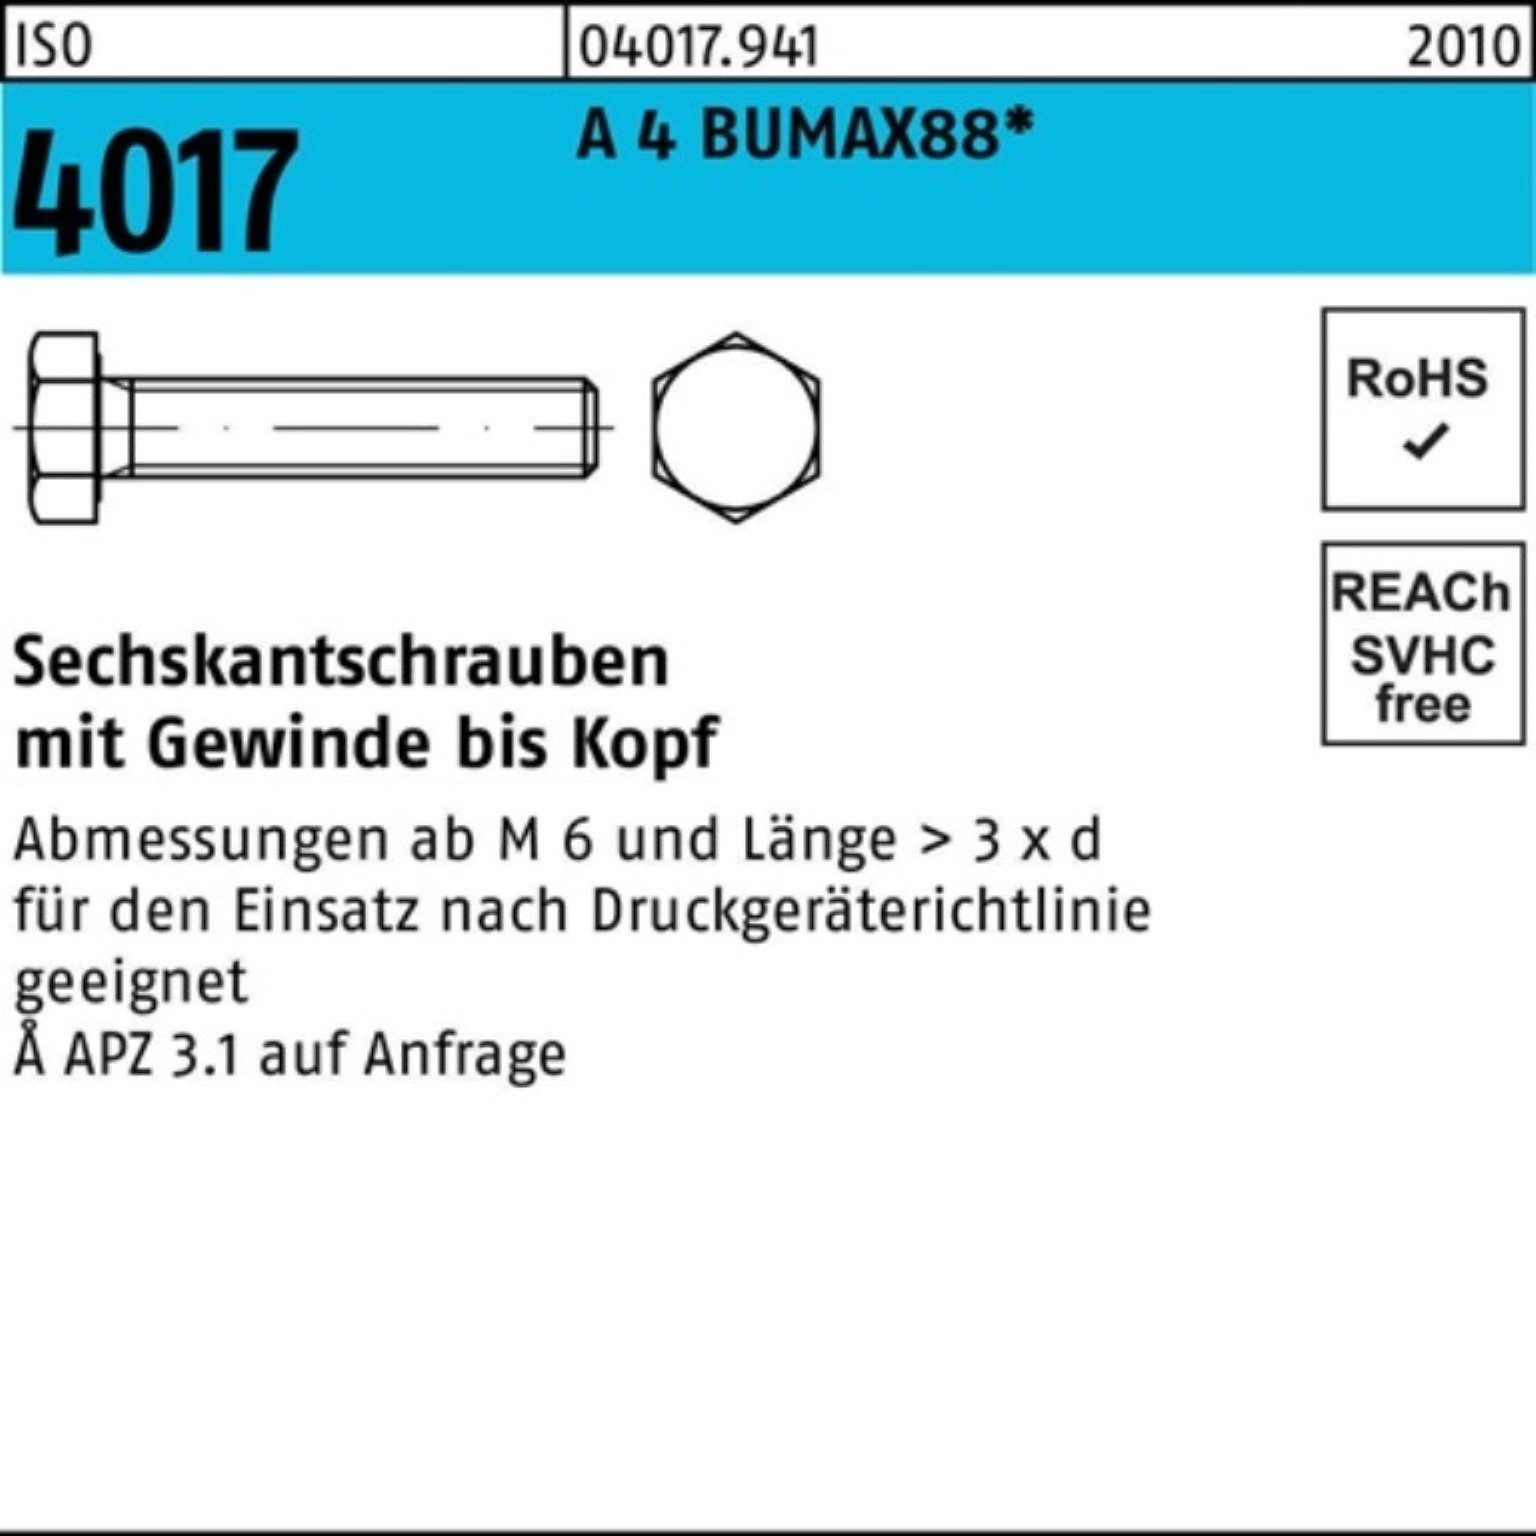 BUMAX88 Sechskantschraube 100er Sechskantschraube A M16x 4017 4 Stück ISO 40 Pack Bufab 25 VG